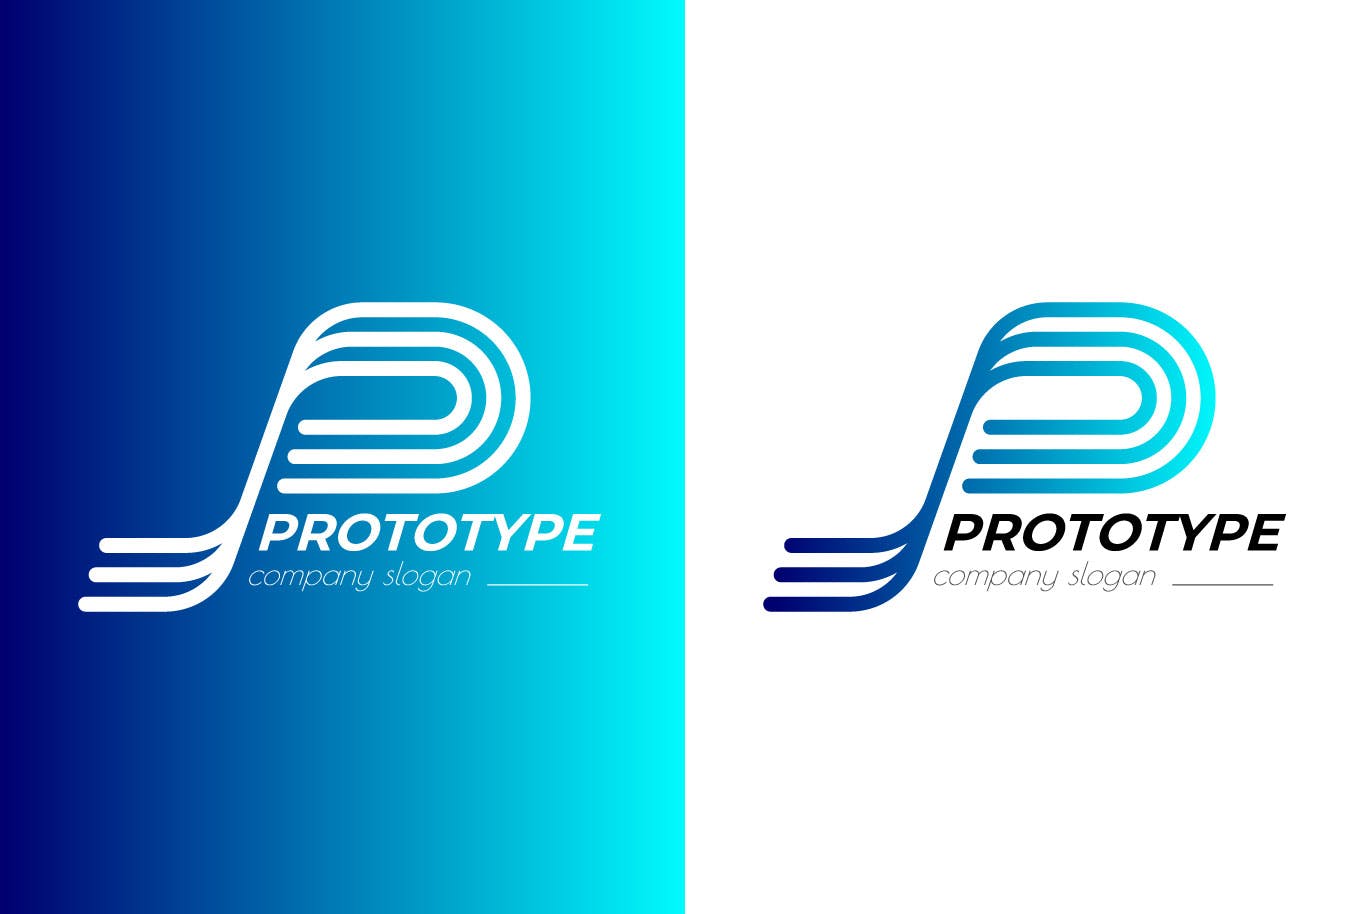 原型设计主题创意图形Logo设计蚂蚁素材精选模板 Prototype Creative Logo Template插图(1)